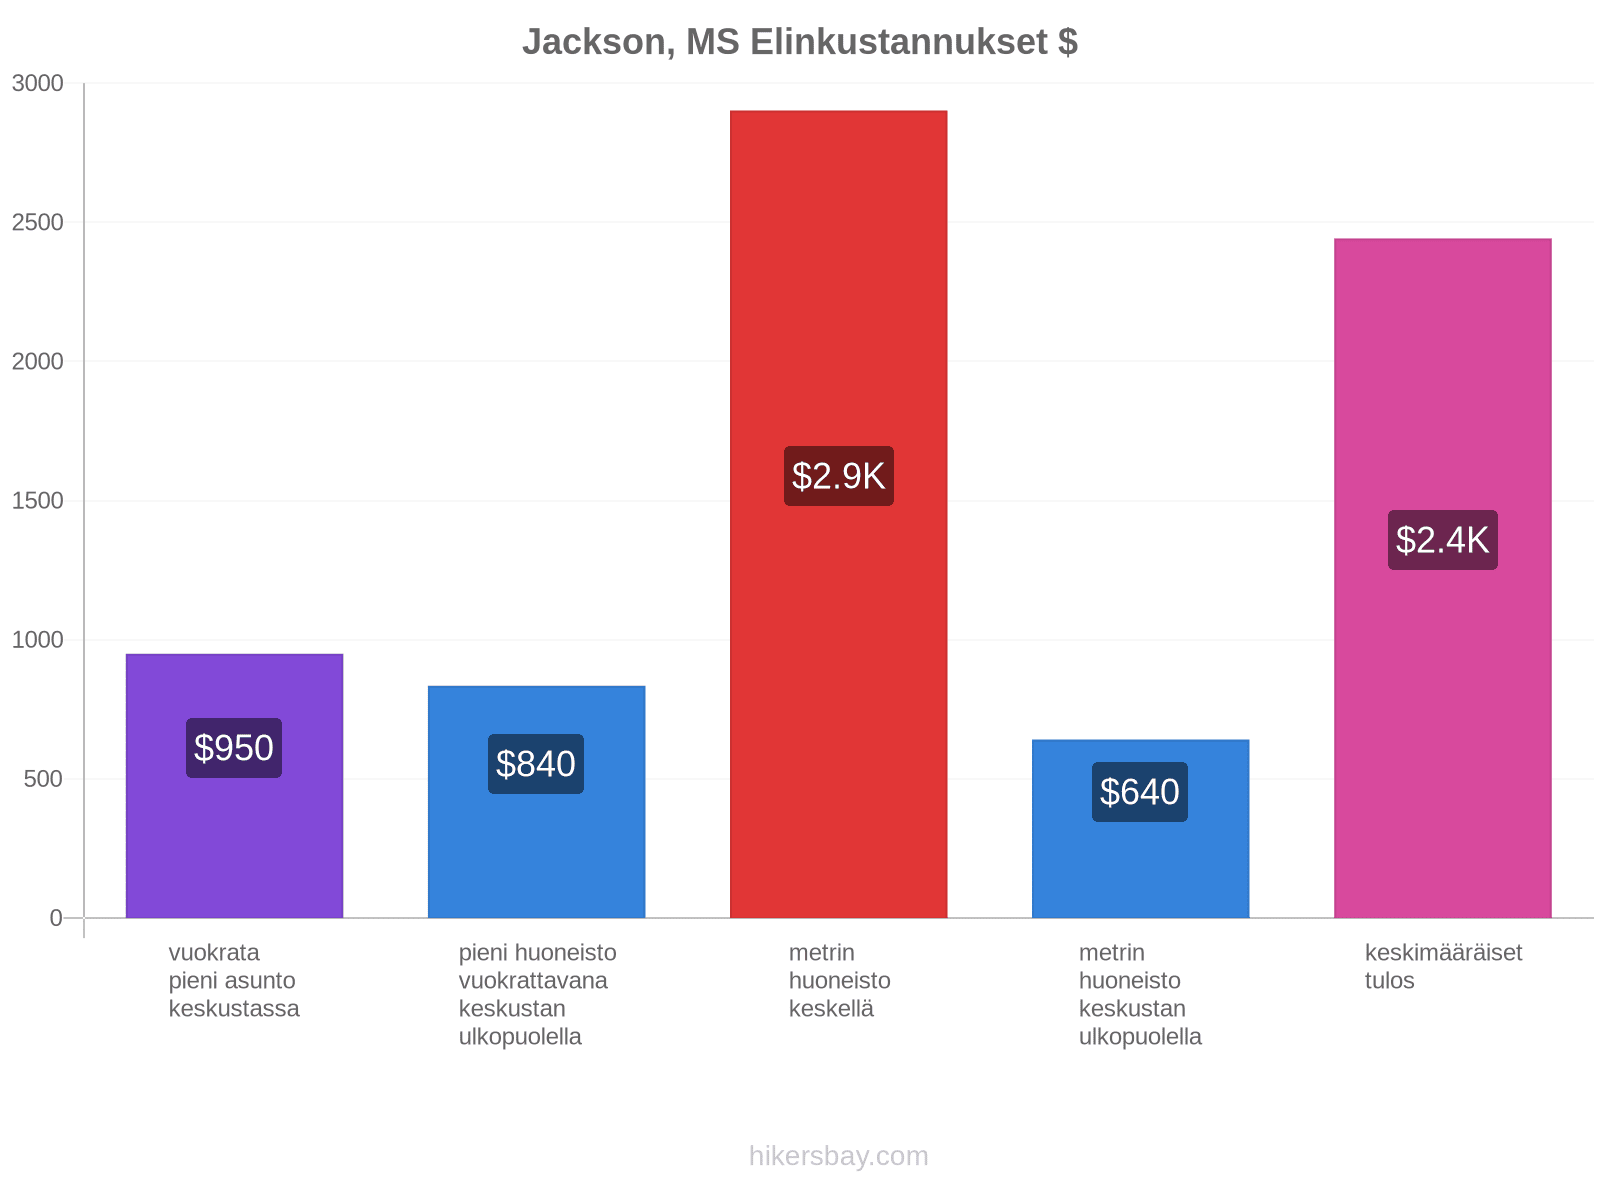 Jackson, MS elinkustannukset hikersbay.com